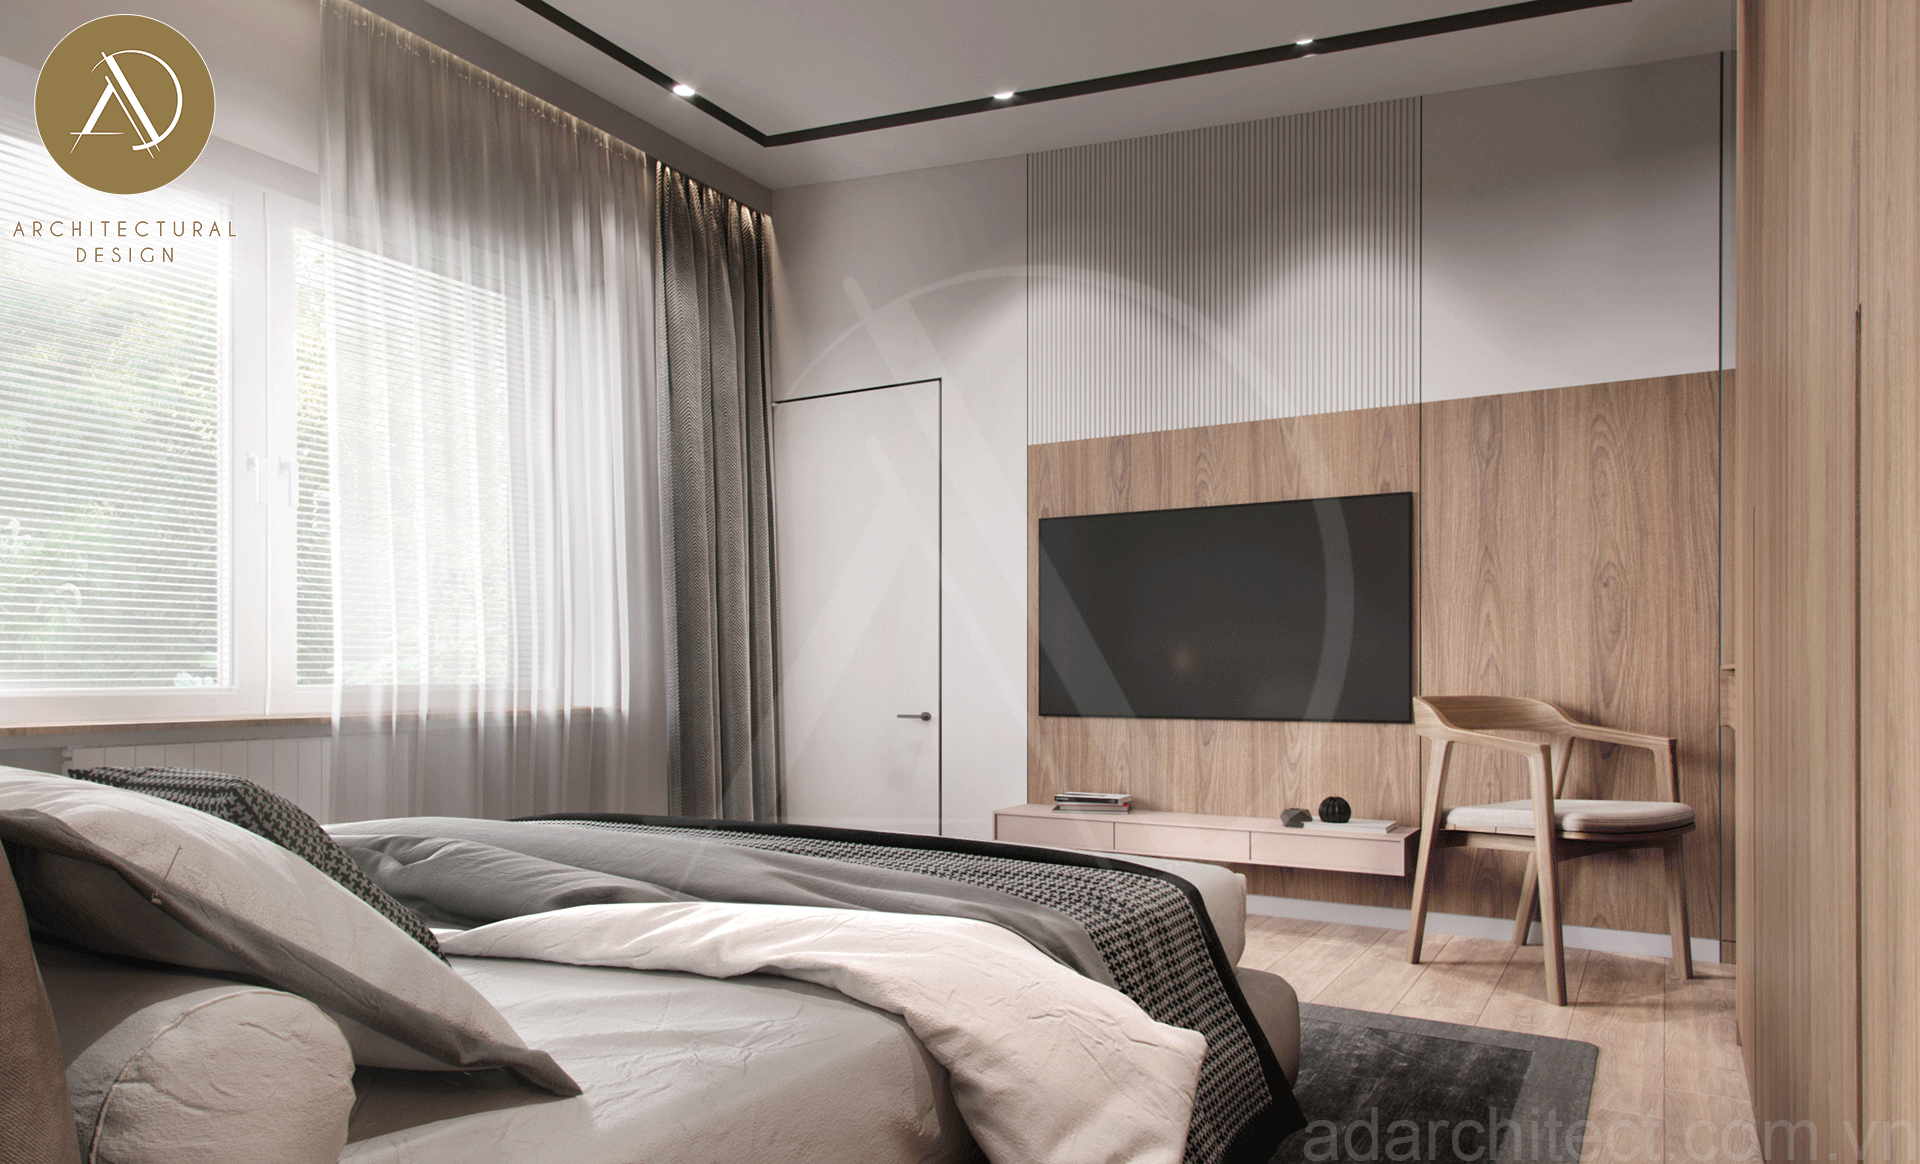 thiết kế phòng ngủ tối giản ở tầng trệt đón sáng tự nhiên cho phòng ngủ thông thoáng